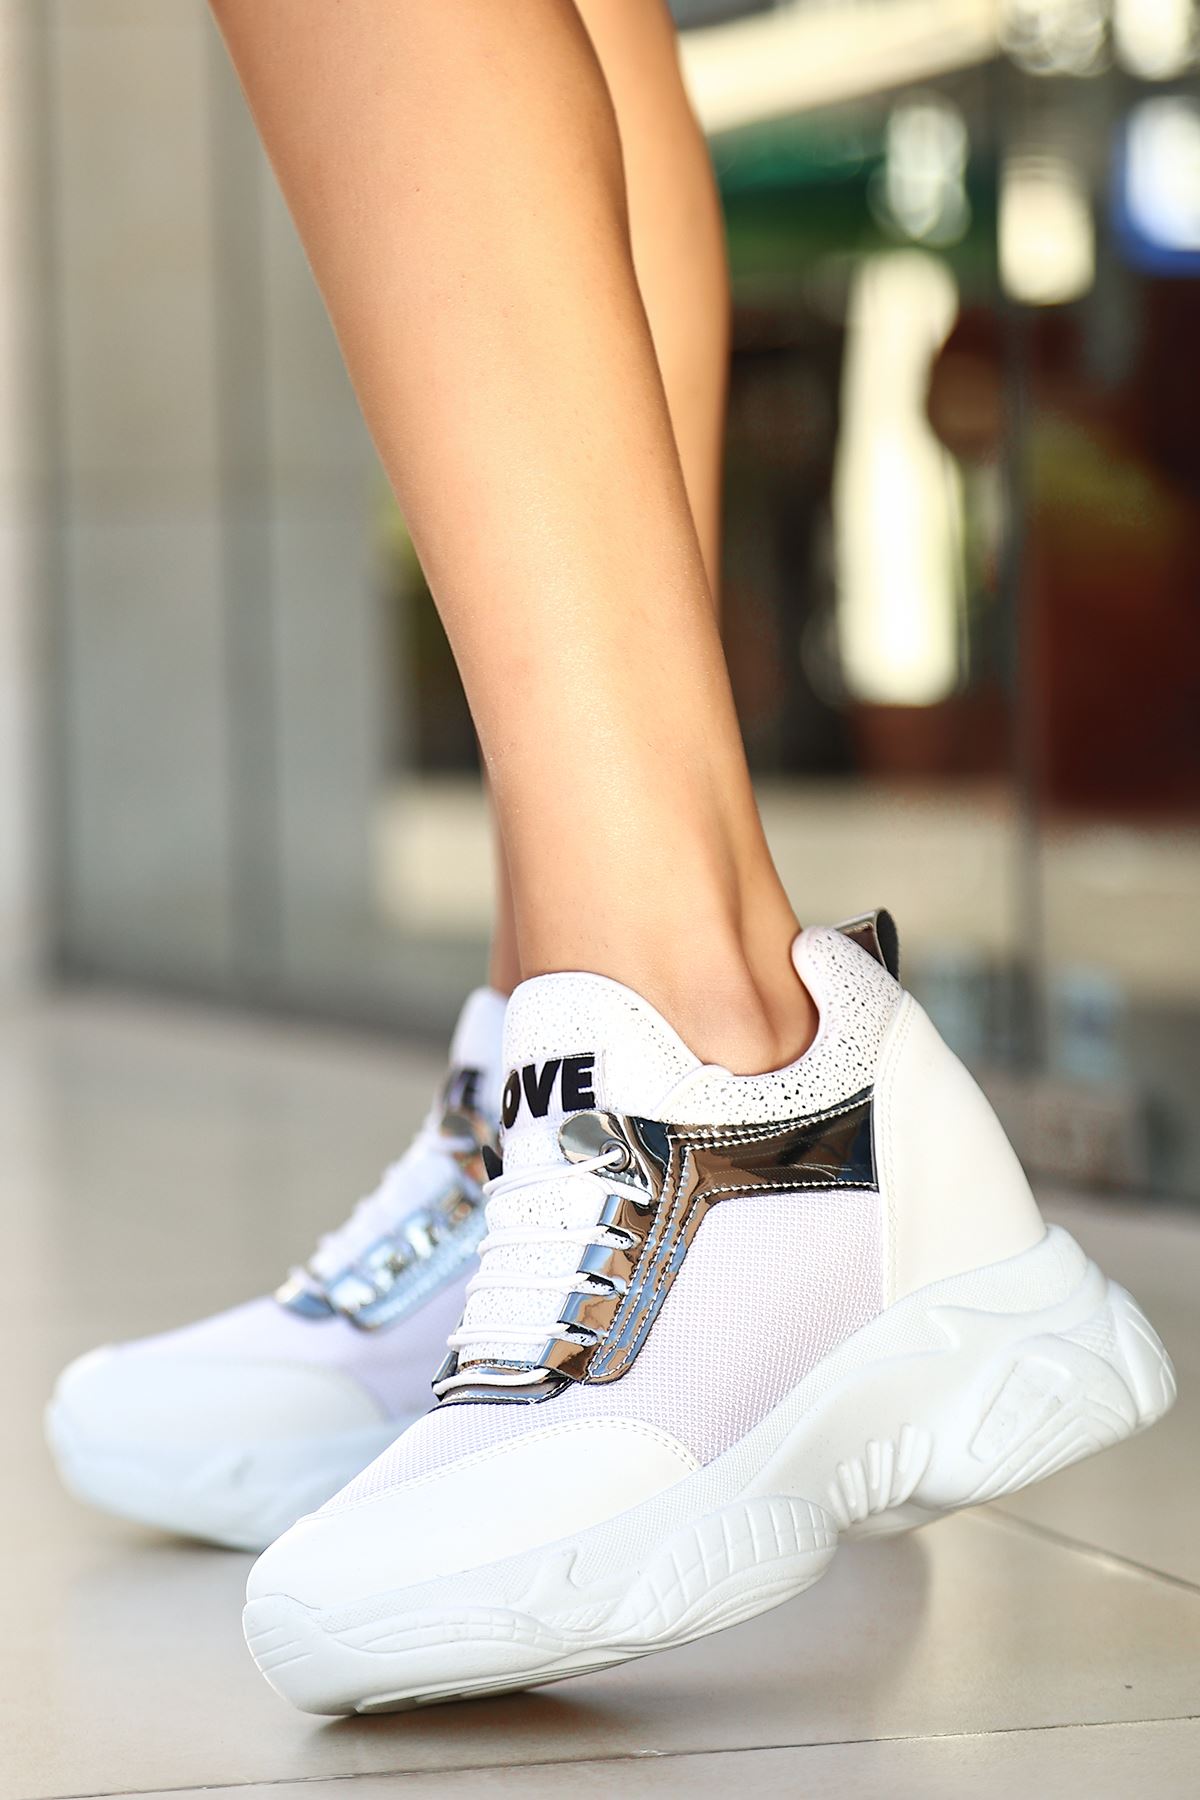 Lovento Gizli Topuk Spor Ayakkabı Anorak Beyaz 